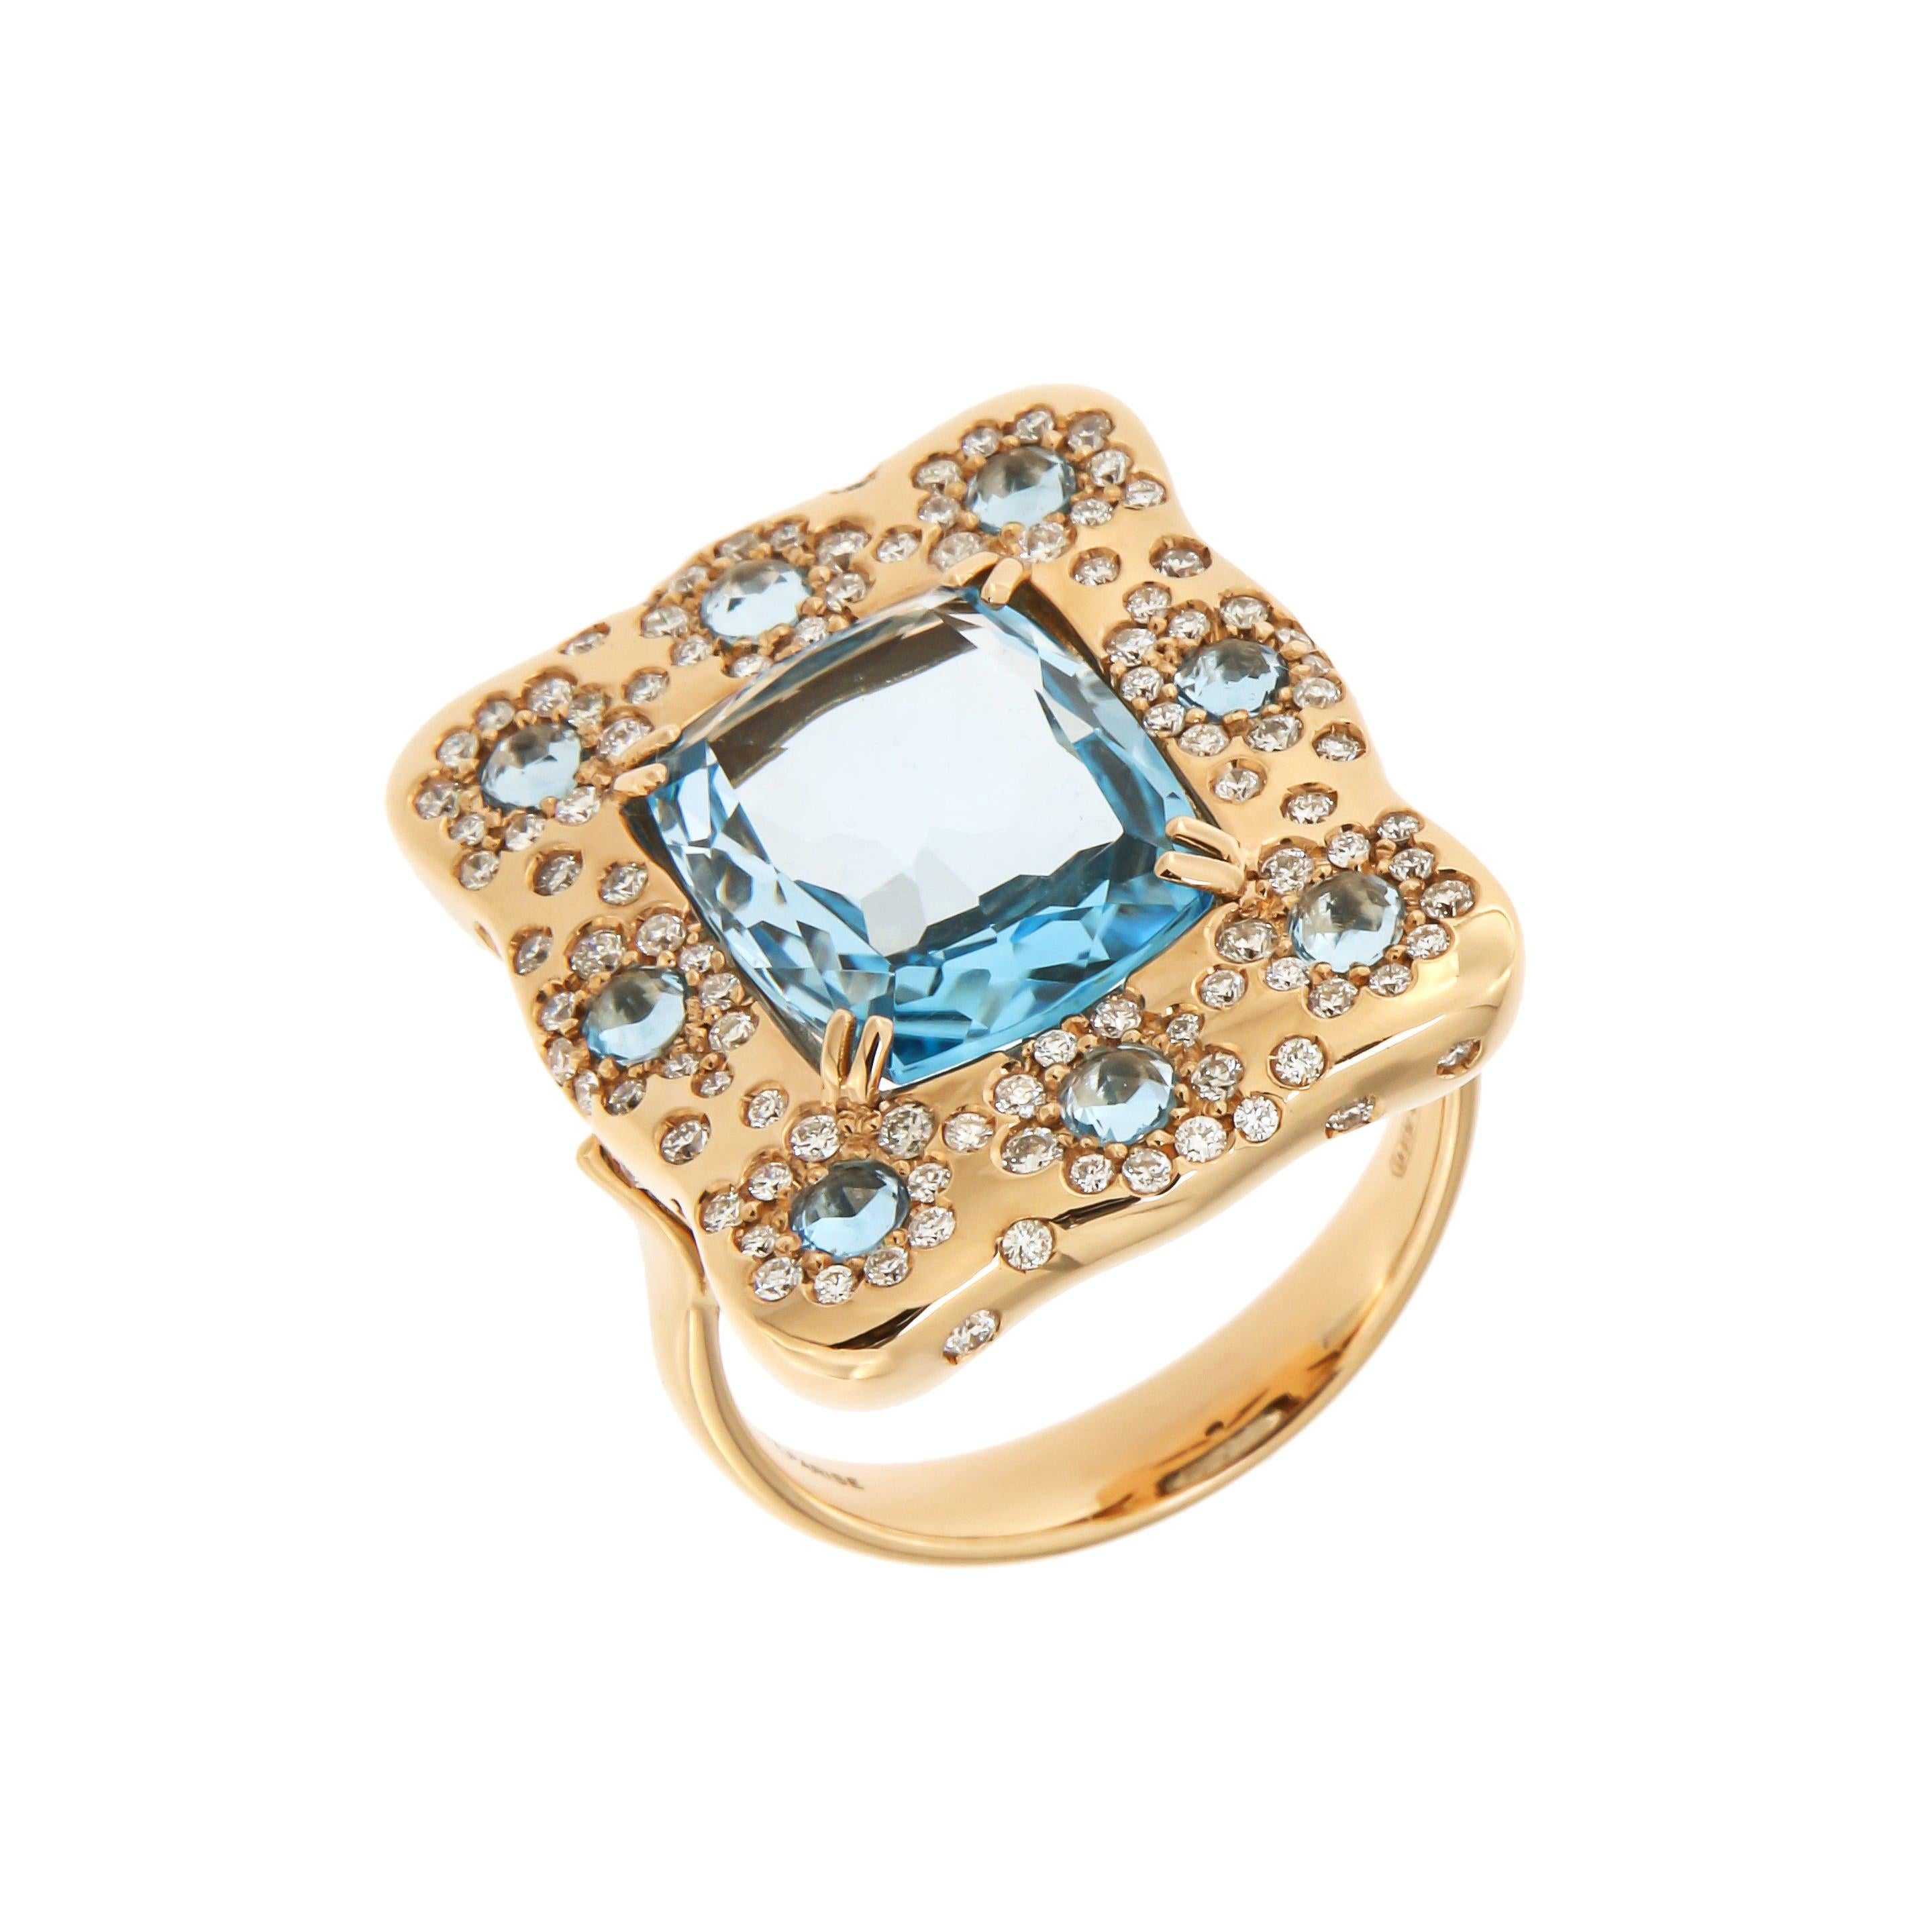 Bague pour elle en or rose 18 carats, avec topaze bleue et diamants, créée par un designer italien